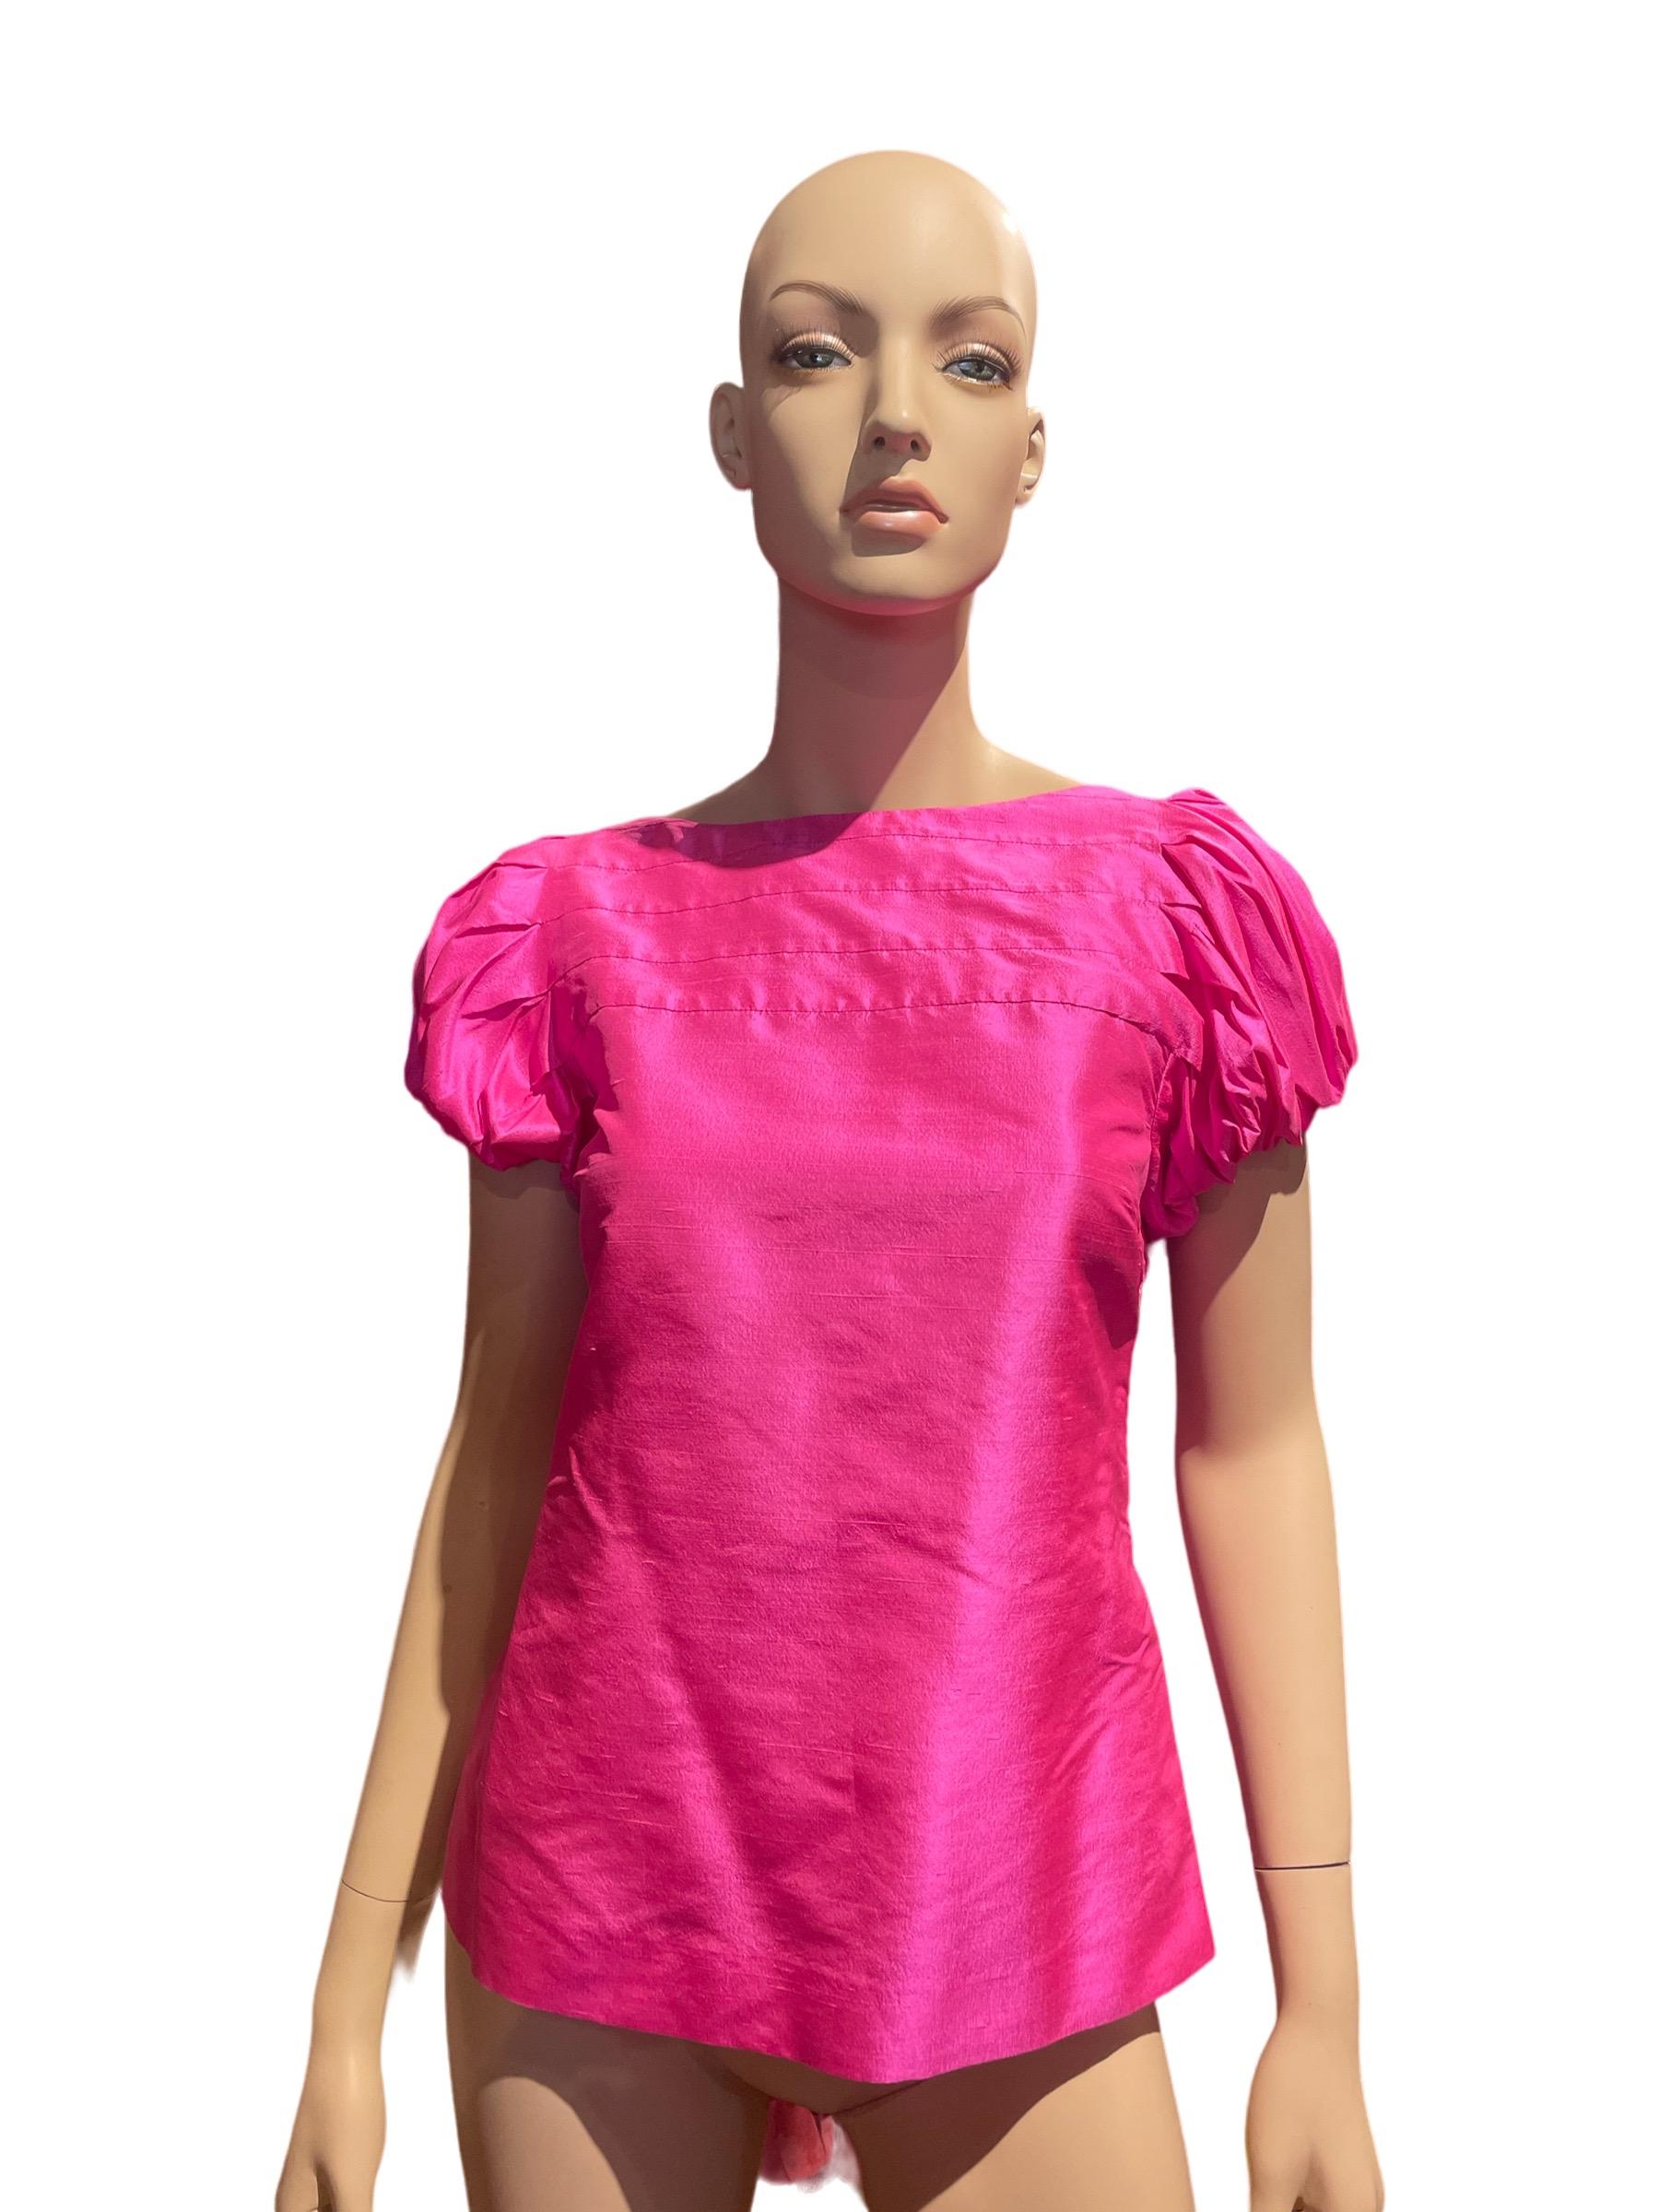 Vintage Seide fuchsia rosa kurze Ärmel Puffärmel Bluse von Ralph Lauren 

Ausgezeichneter Zustand!

Büste: 34